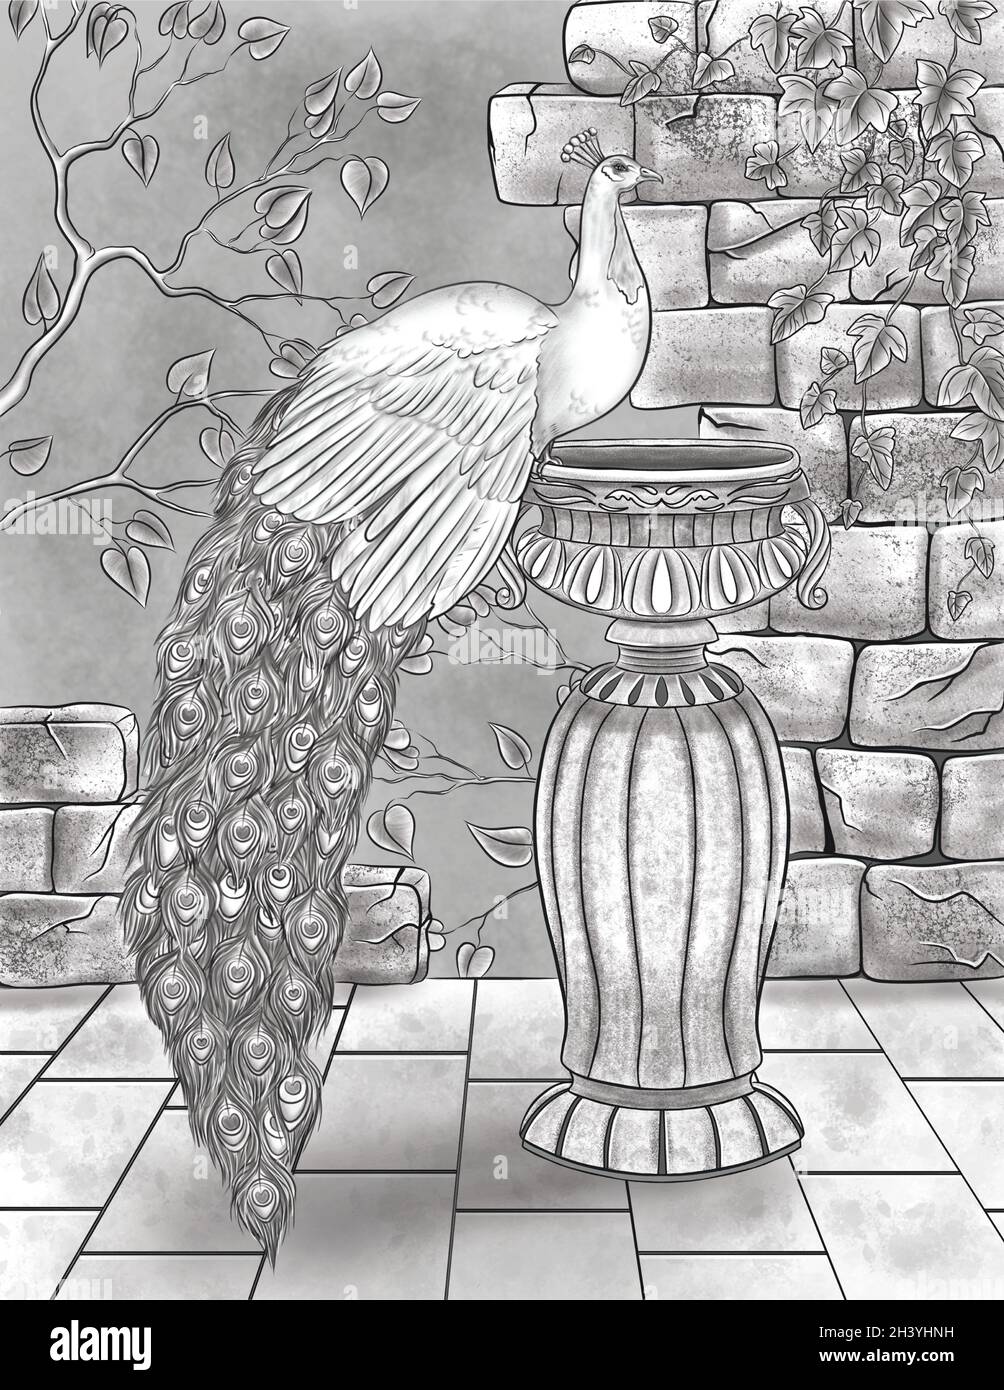 Schöner Pfau, der auf Einem Wasserbecken mit gebrochenen Wänden und farblosem Liniendiagramm der Reben ruht. Hübsches Peafowl, das auf Einer Vase steht Stockfoto